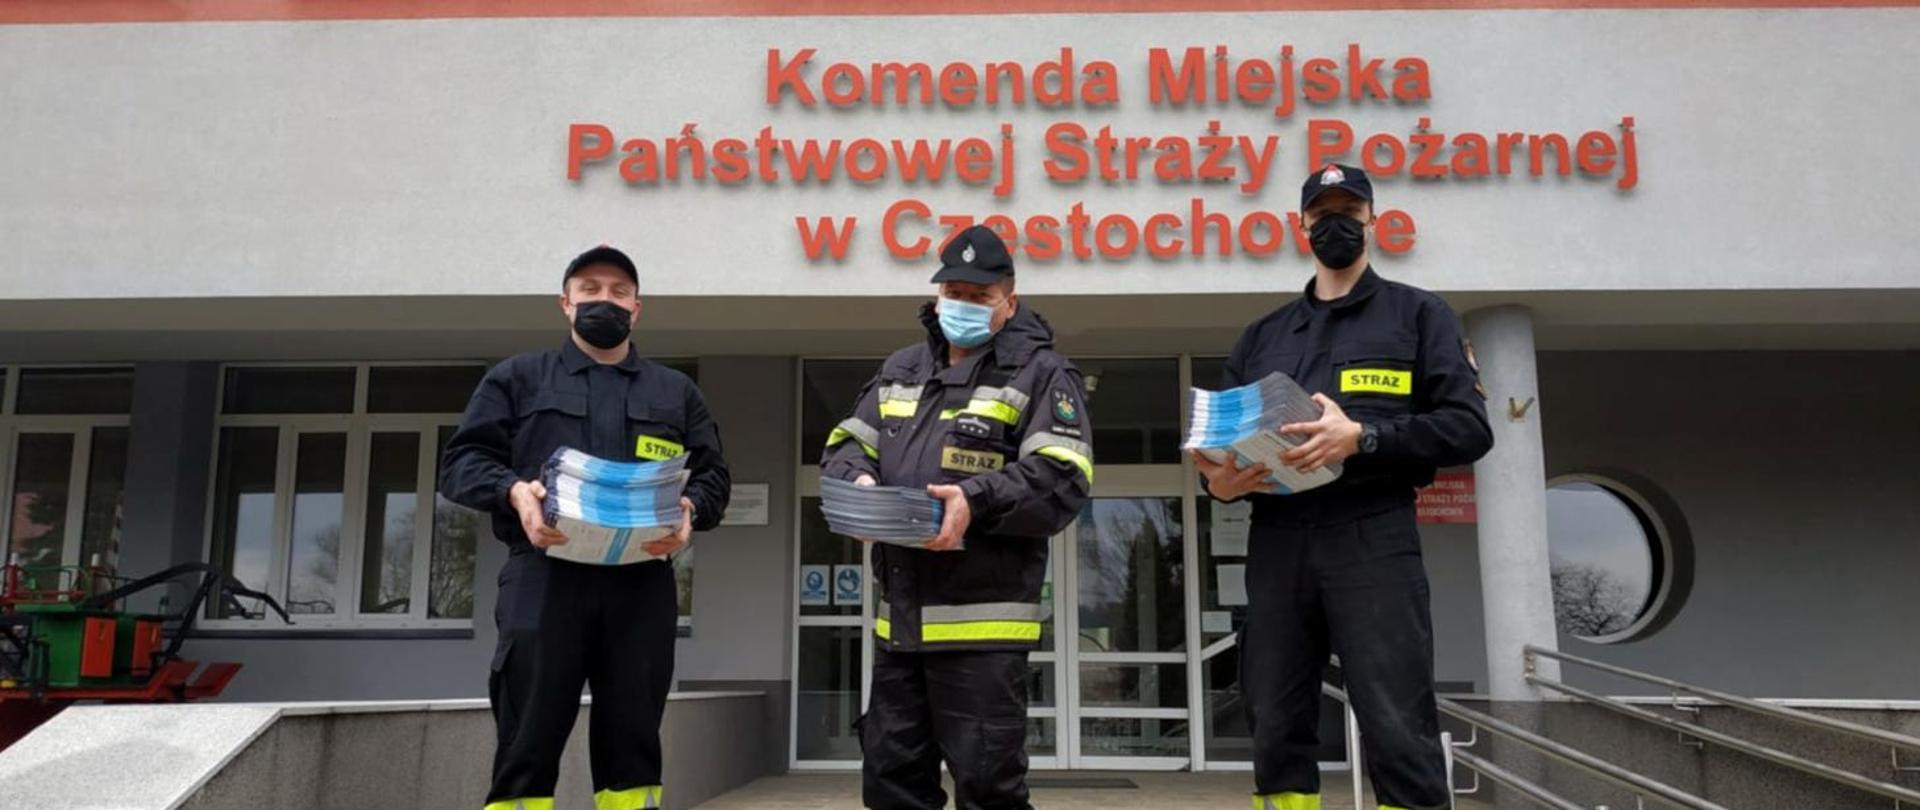 Zdjęcie przedstawia trzech strażaków trzymających ulotki.